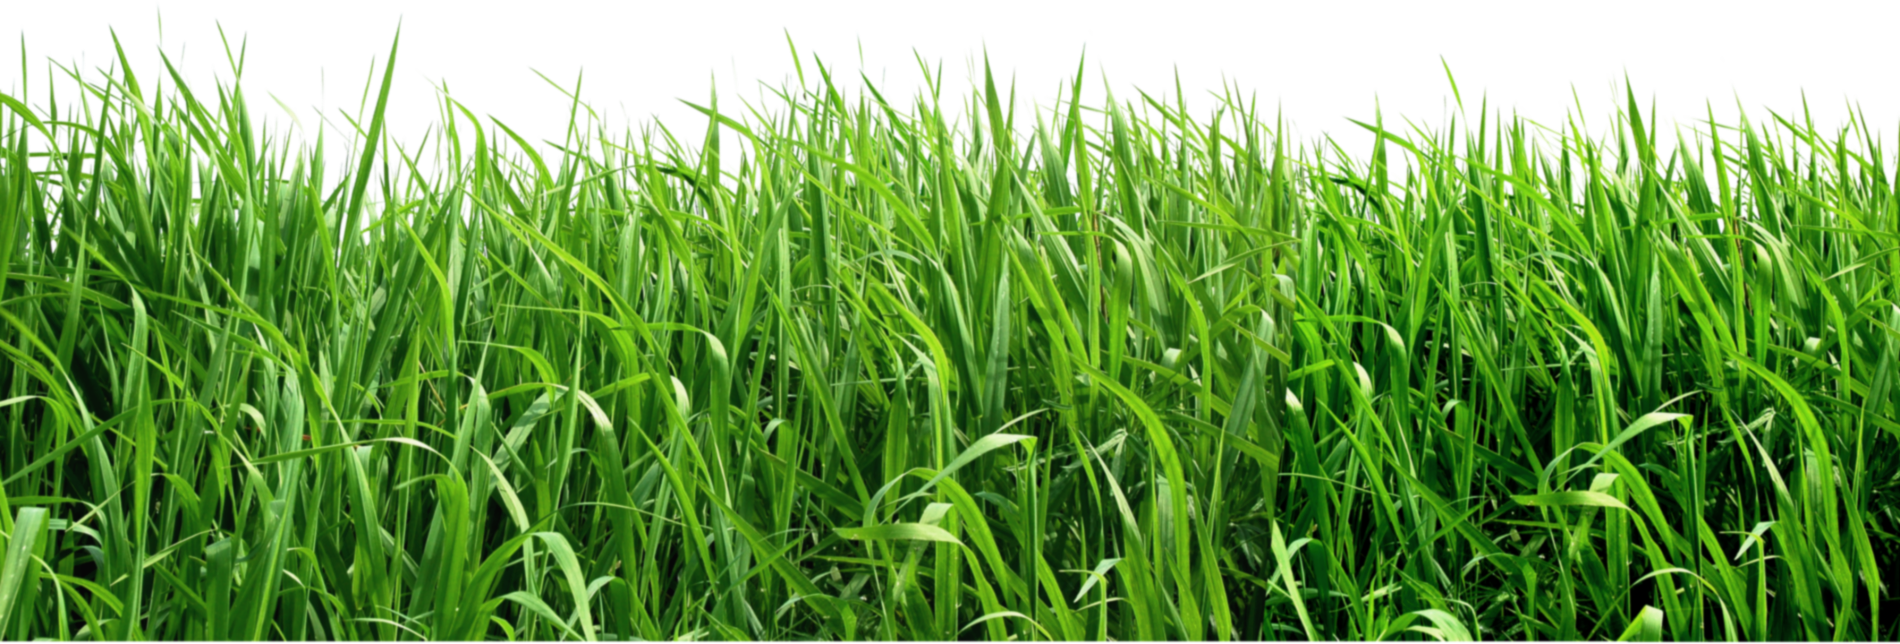 grass png image, green grass 